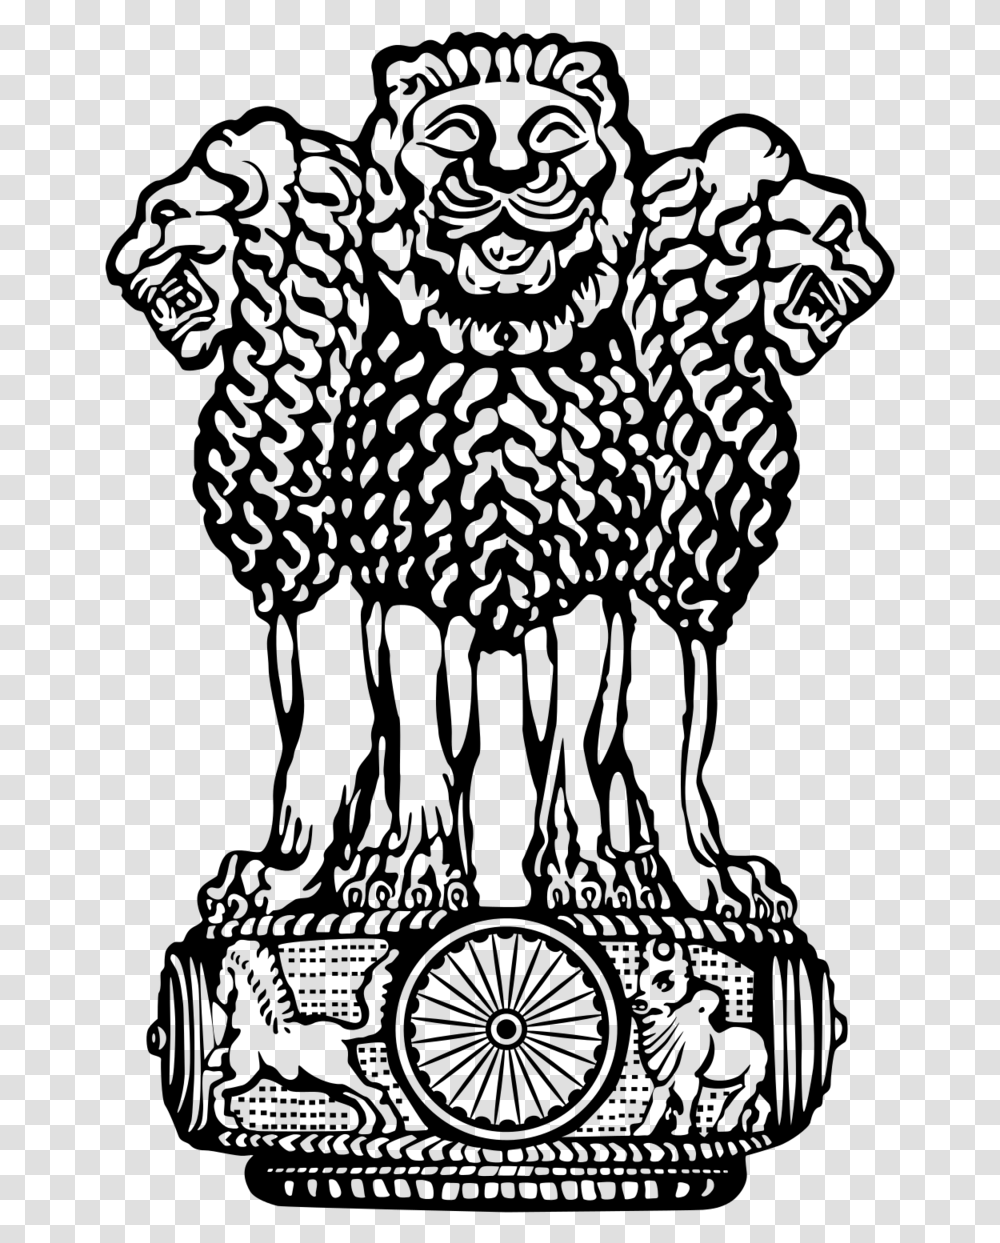 Coat Of Arms Of India Photos Indian National Emblem, Gray, World Of Warcraft Transparent Png